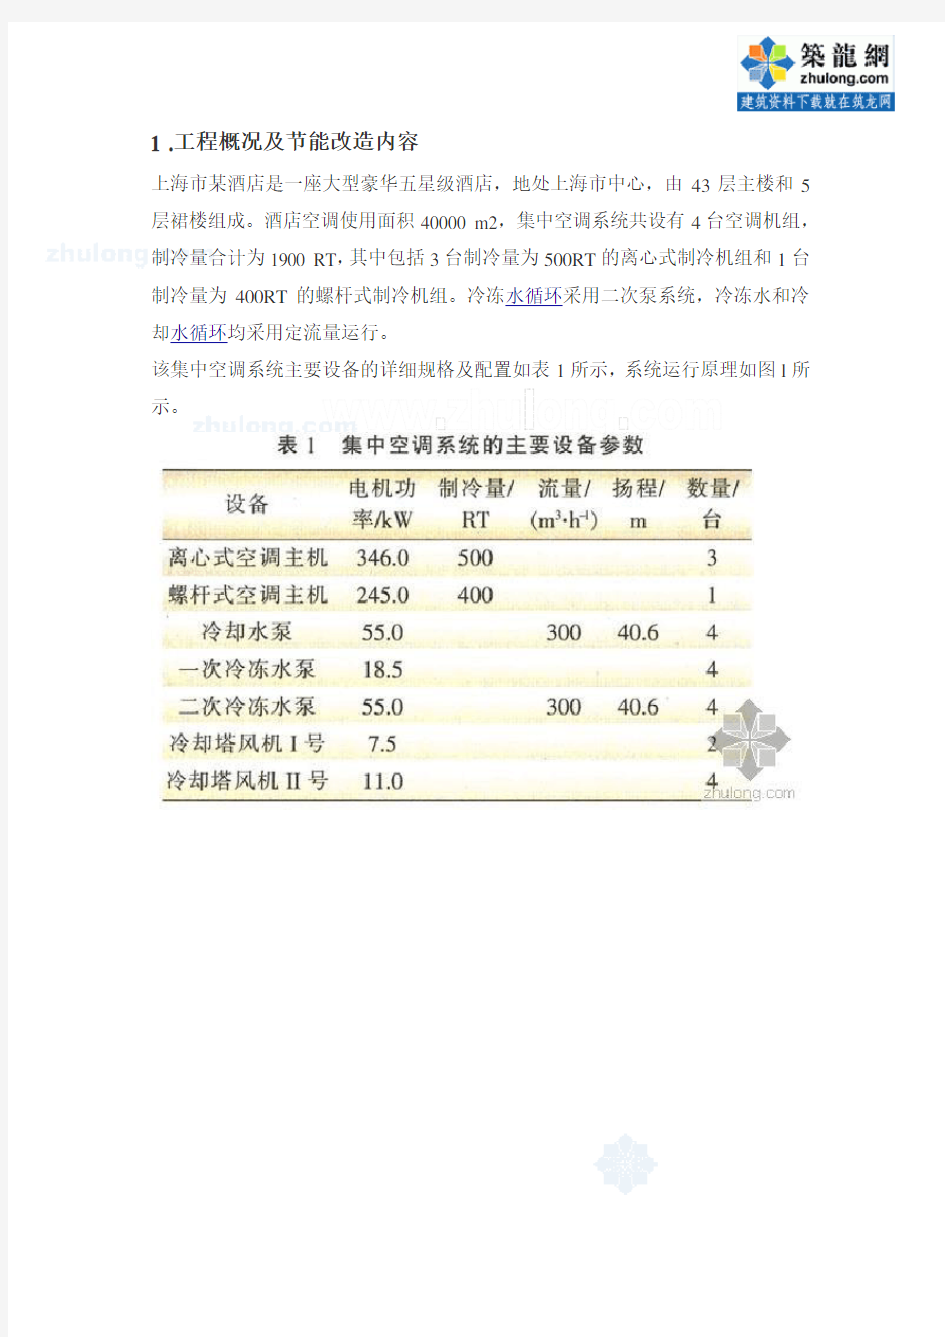 上海市某酒店中央空调智能节能方案_secret